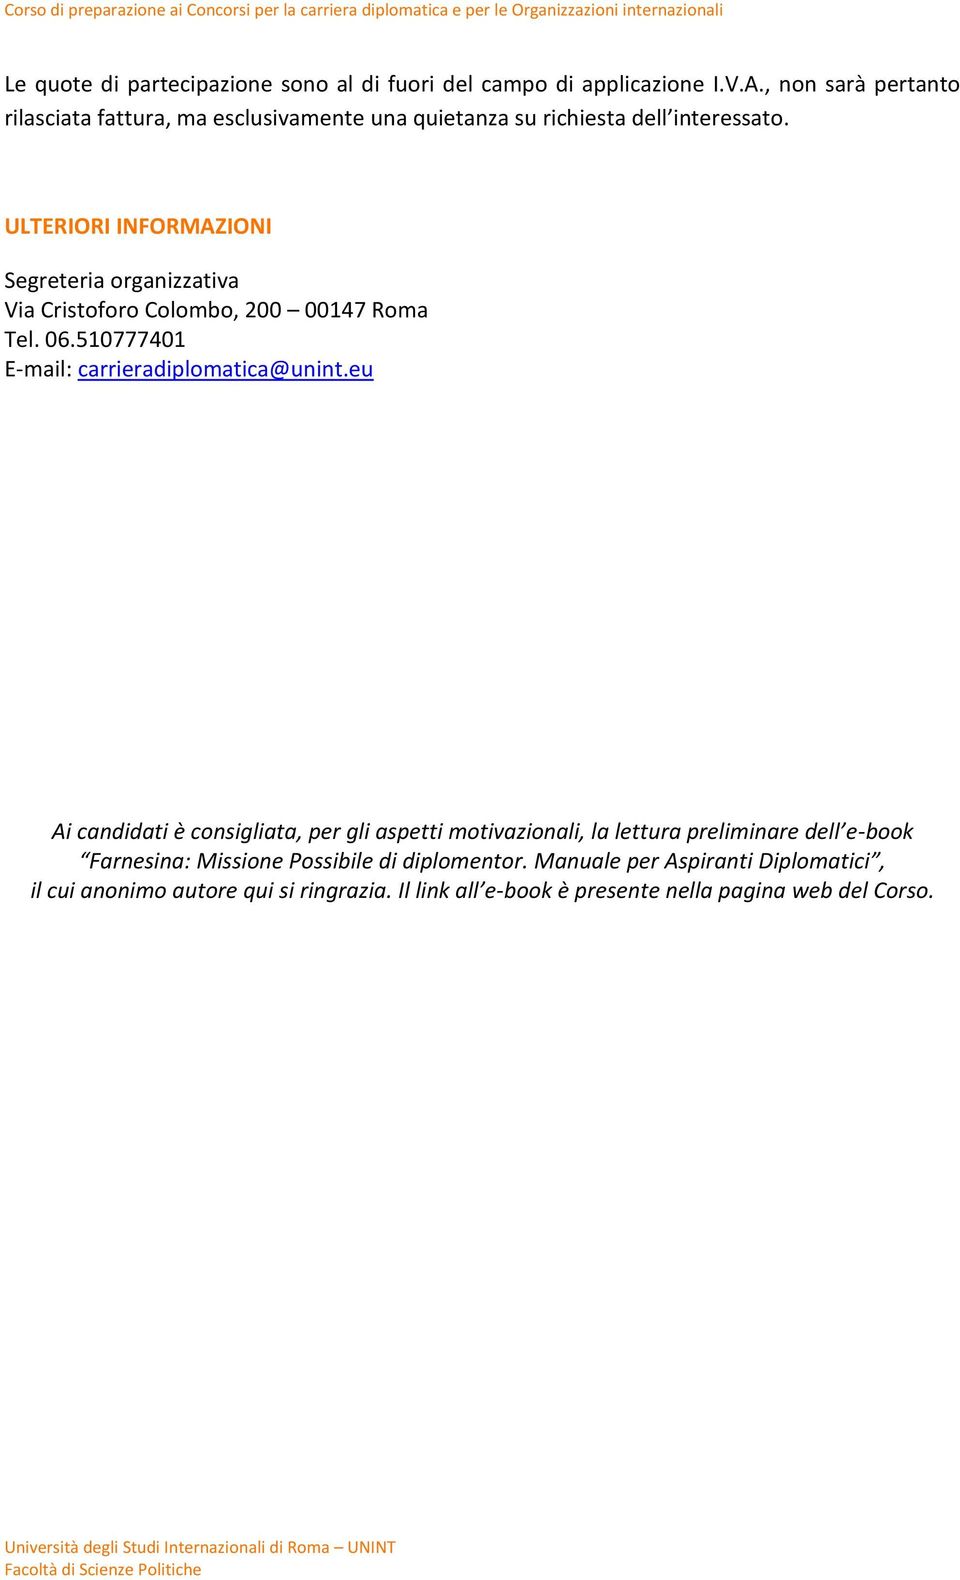 ULTERIORI INFORMAZIONI Segreteria organizzativa Via Cristoforo Colombo, 200 00147 Roma Tel. 06.510777401 E-mail: carrieradiplomatica@unint.